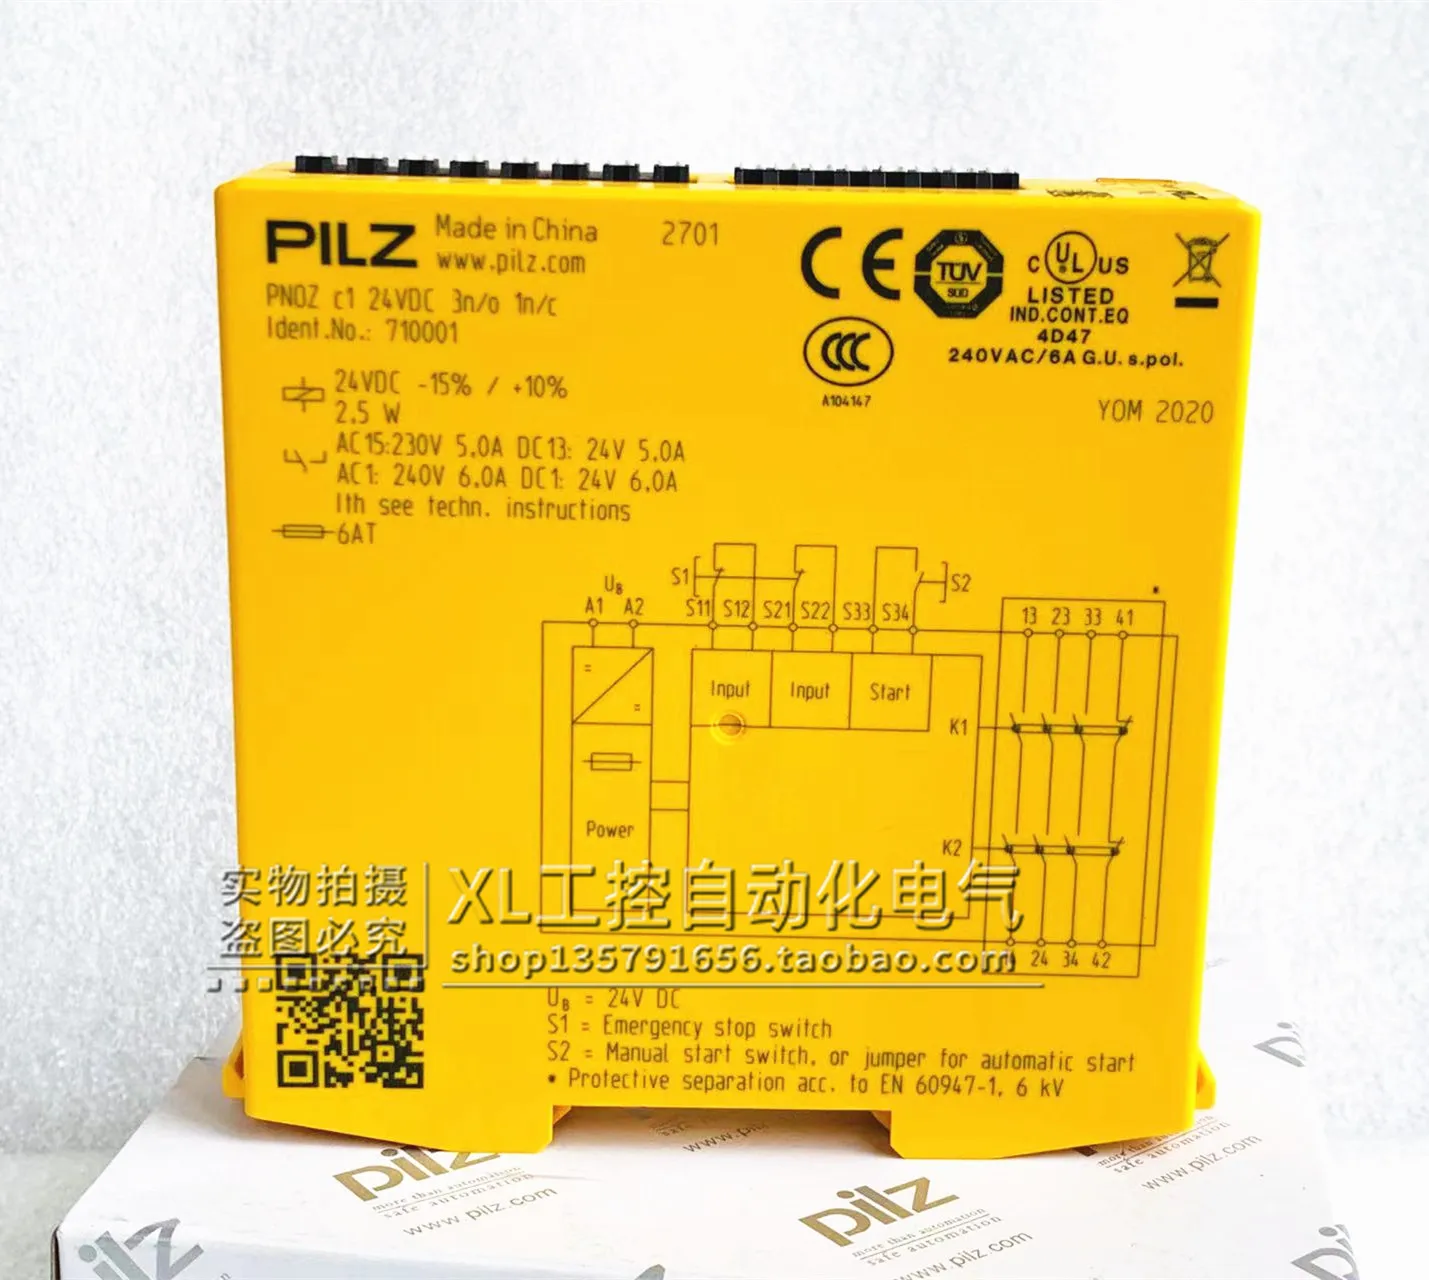 Eredeti PILZ Pierce Biztonsági Relé PNOZ C1 24VDC Termék Sz 710001 Raktáron